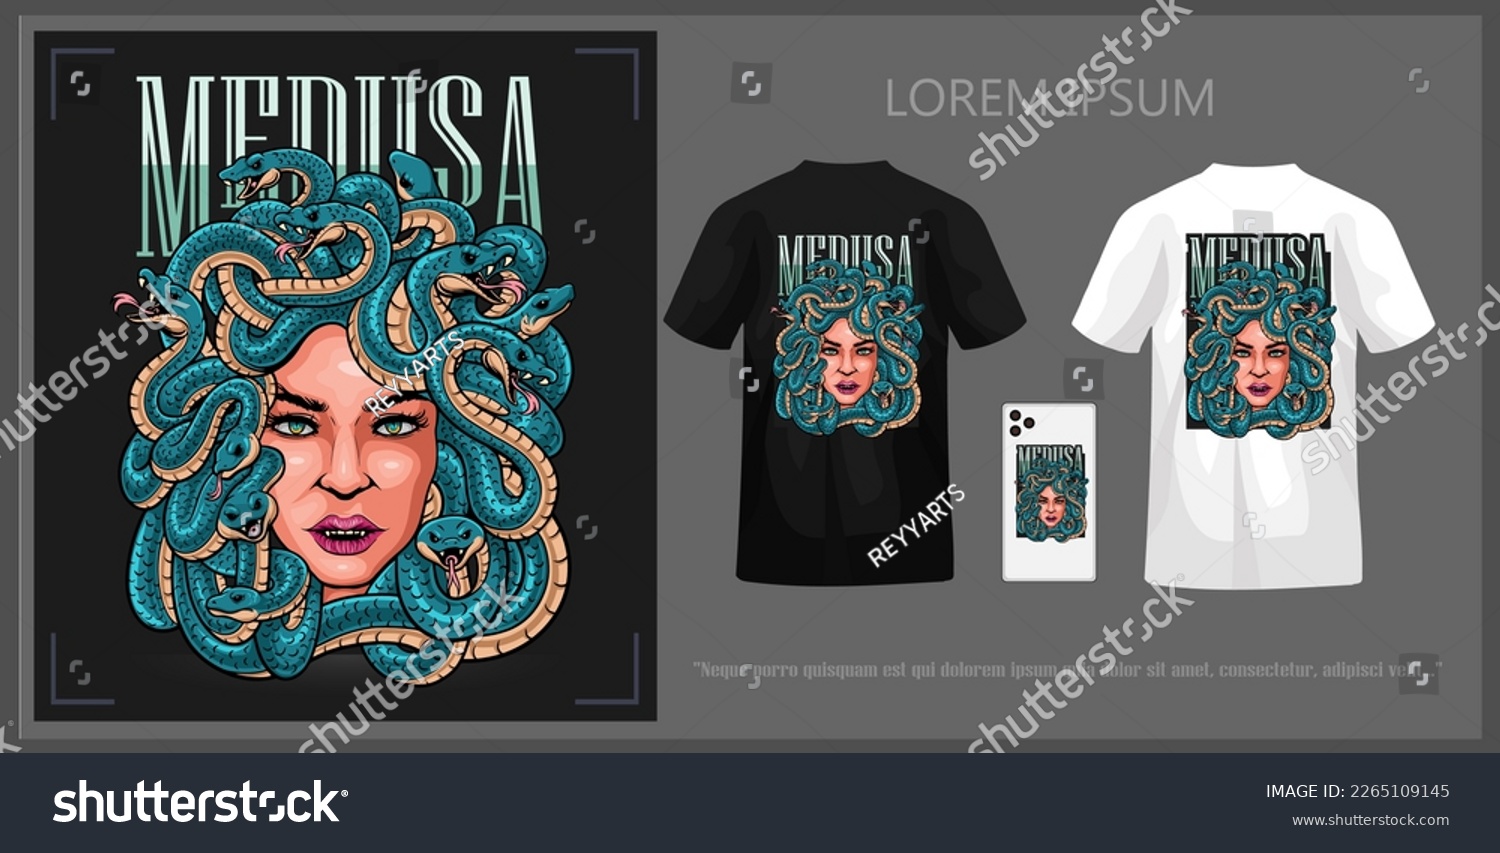 SVG of Medusa head t-shirt design, complete with mockup. svg